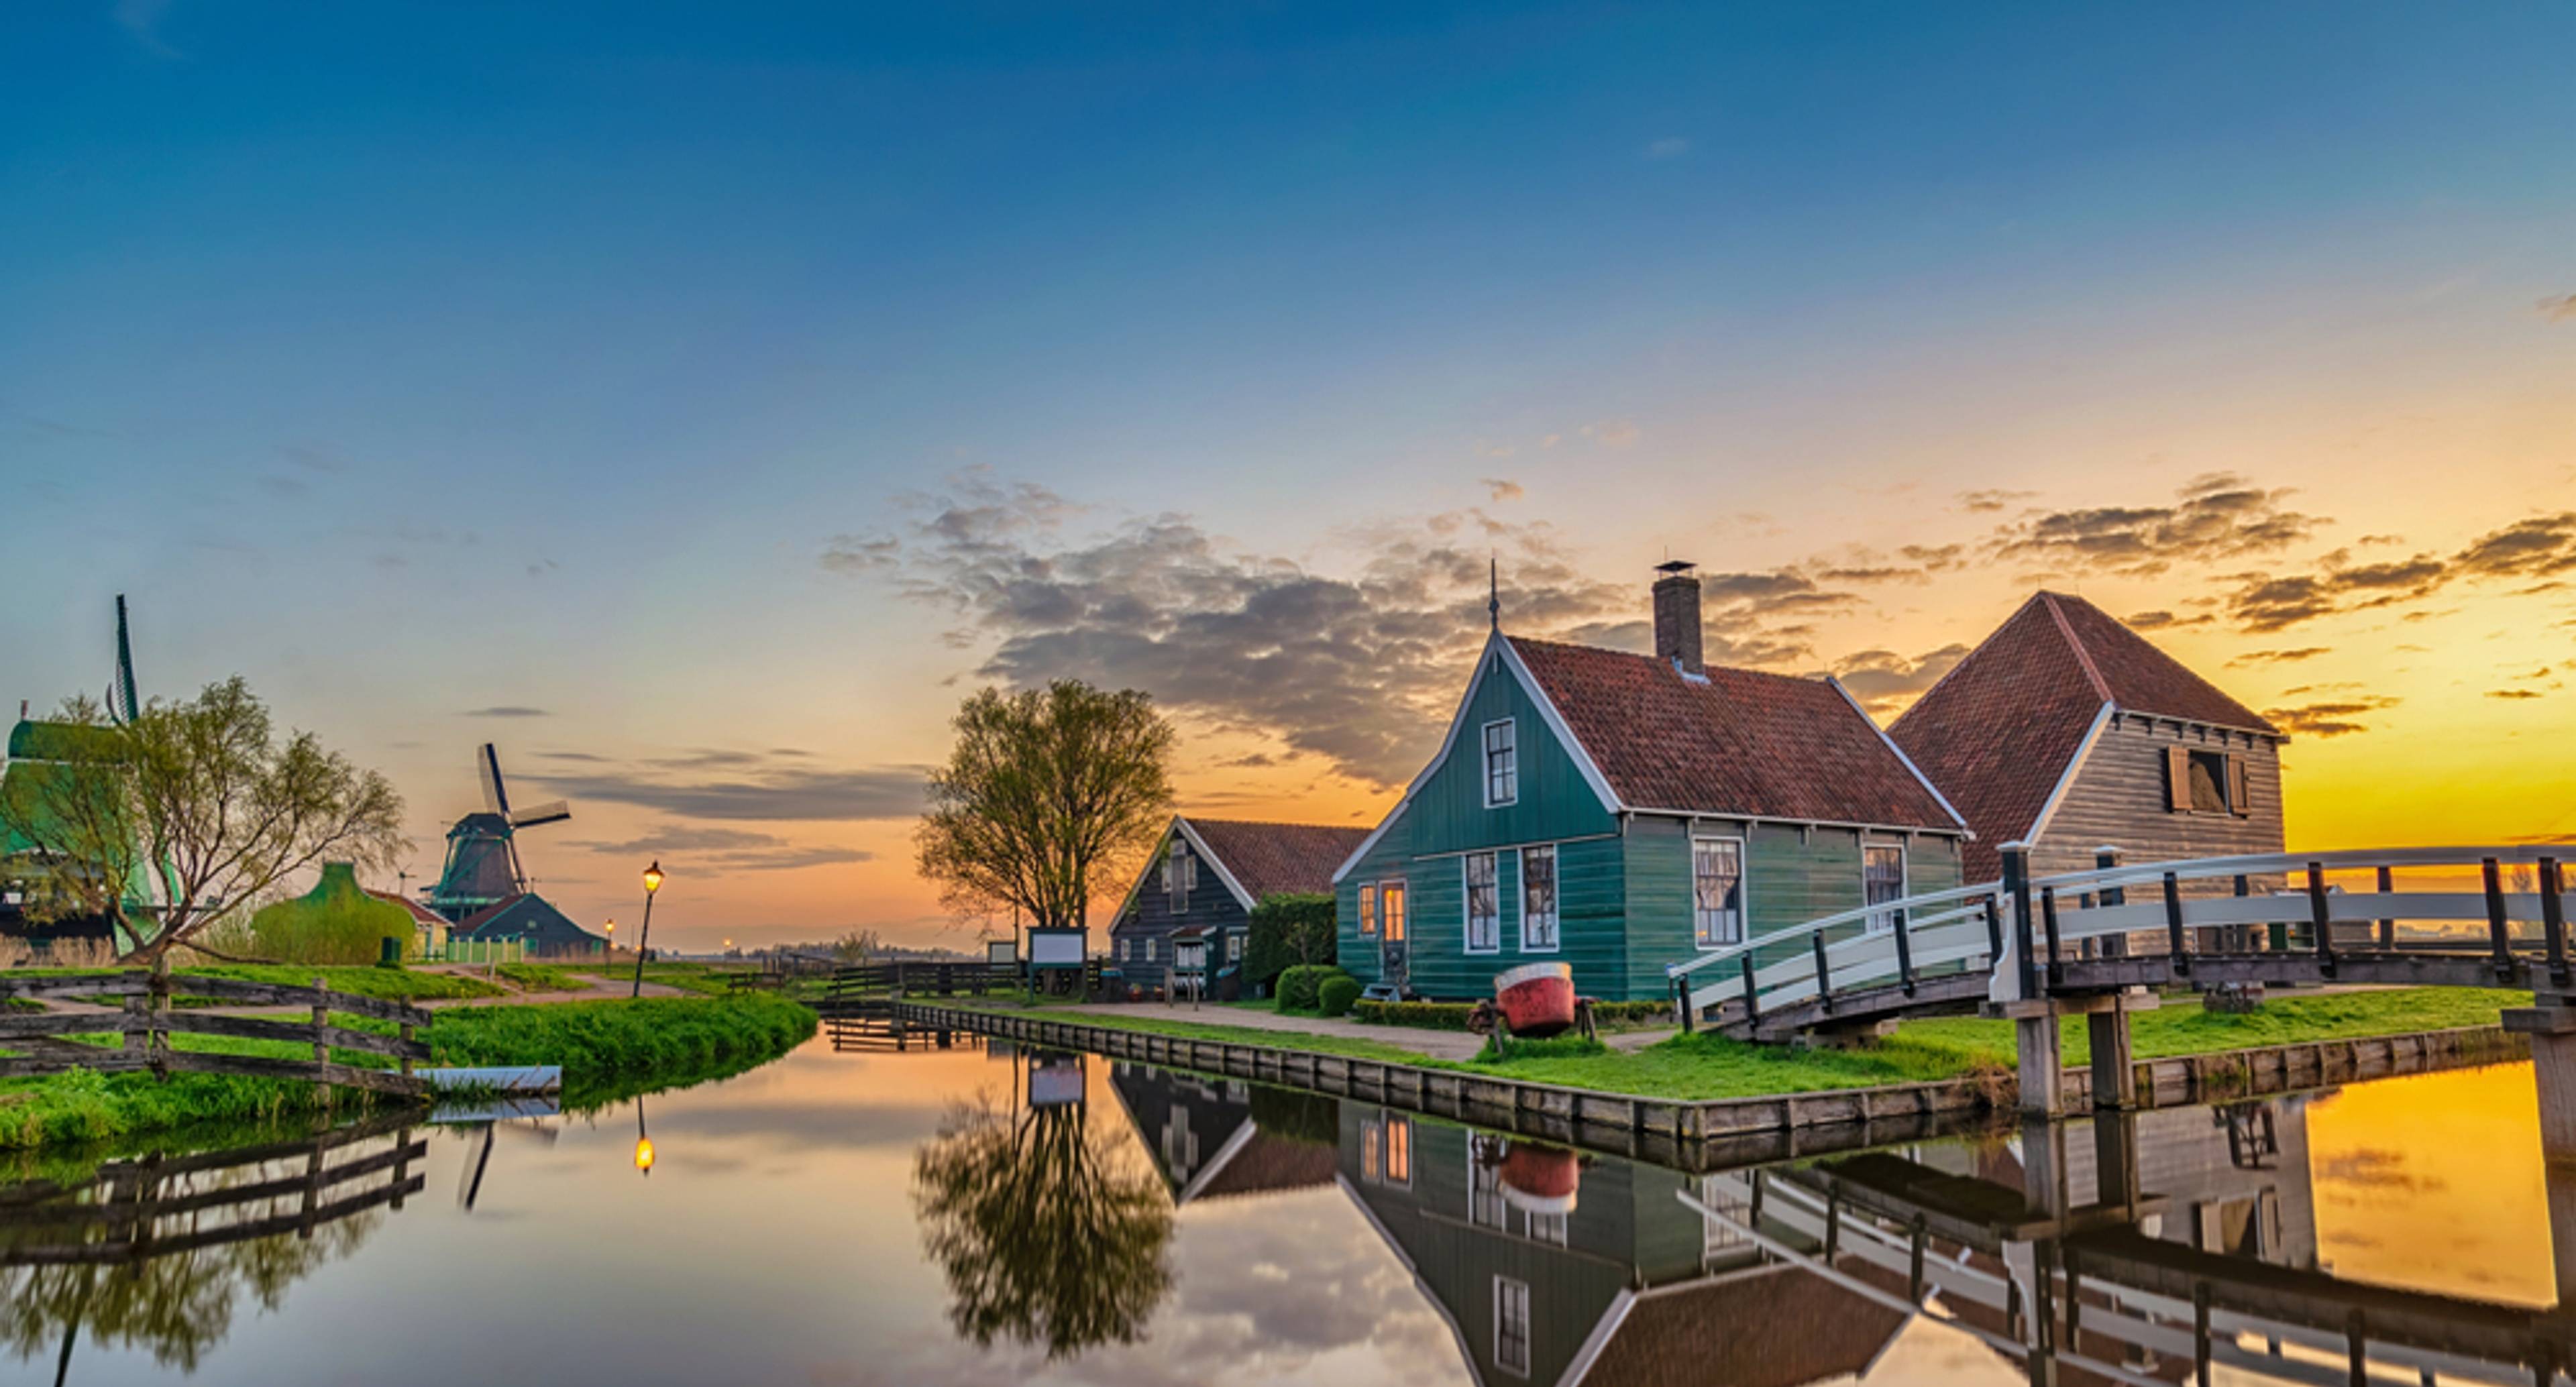 Pueblos desconocidos y maravillosos molinos de viento holandeses